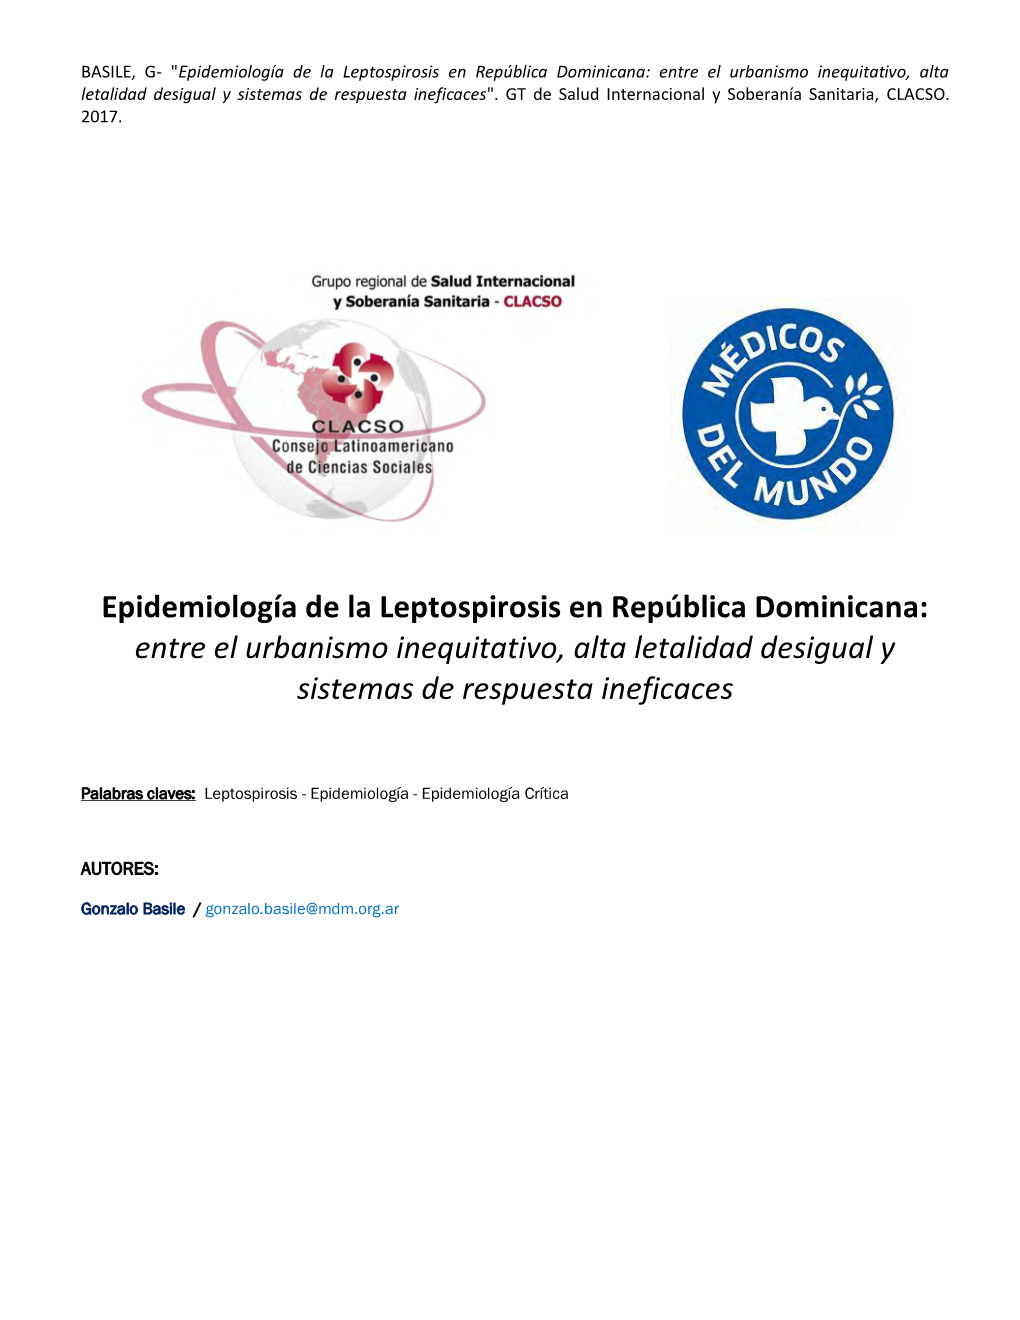 Epidemiología De La Leptospirosis En República Dominicana: Entre El Urbanismo Inequitativo, Alta Letalidad Desigual Y Sistemas De Respuesta Ineficaces"